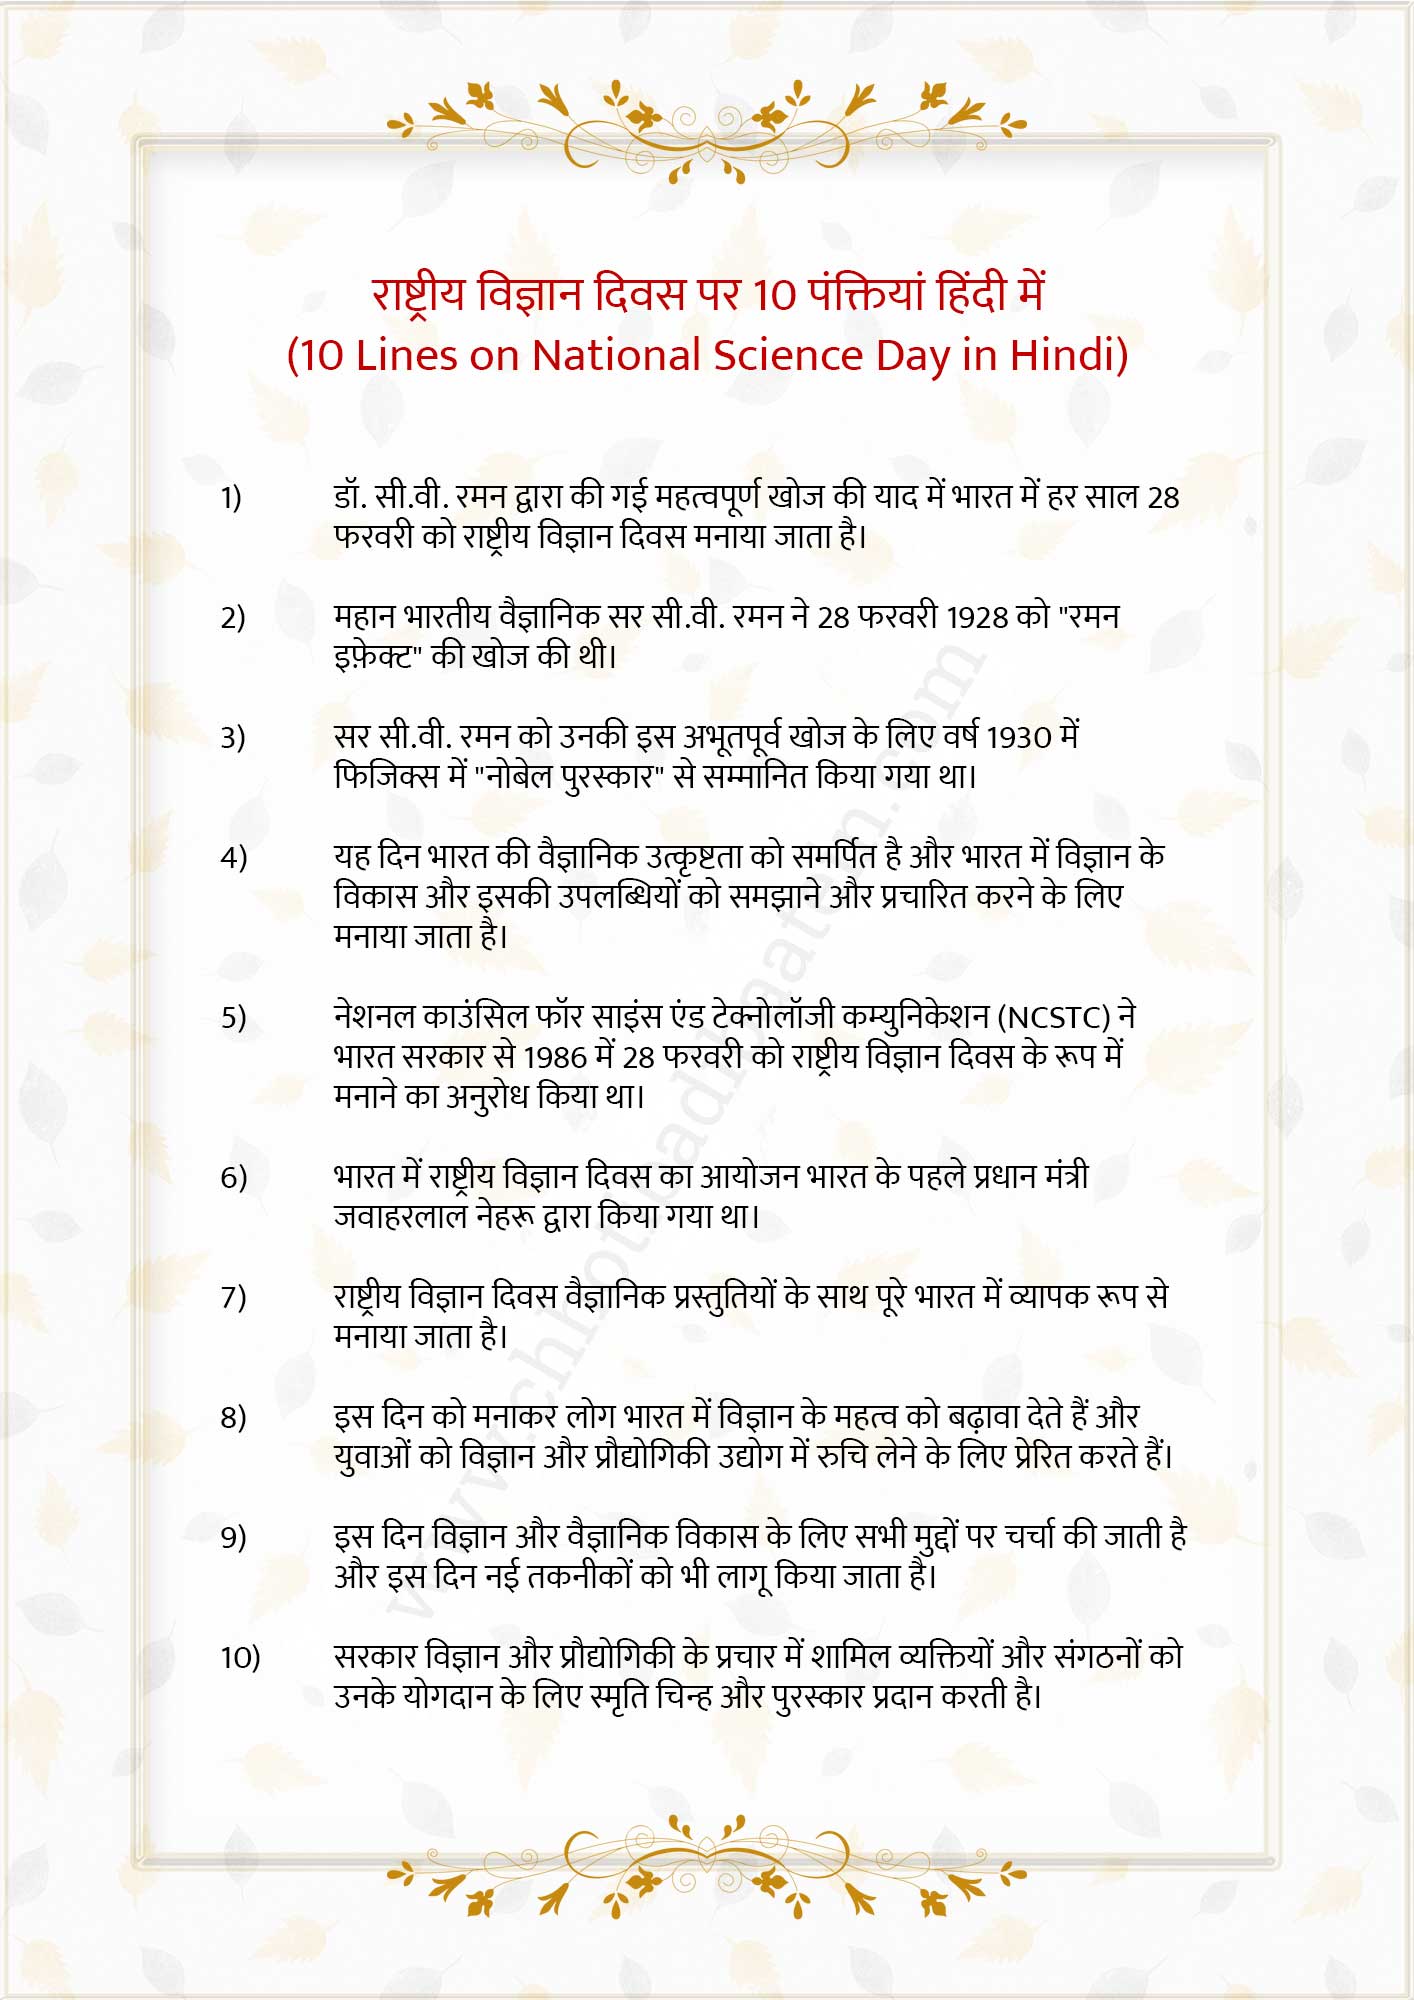 राष्ट्रीय विज्ञान दिवस पर निबंध - National science day essay in Hindi